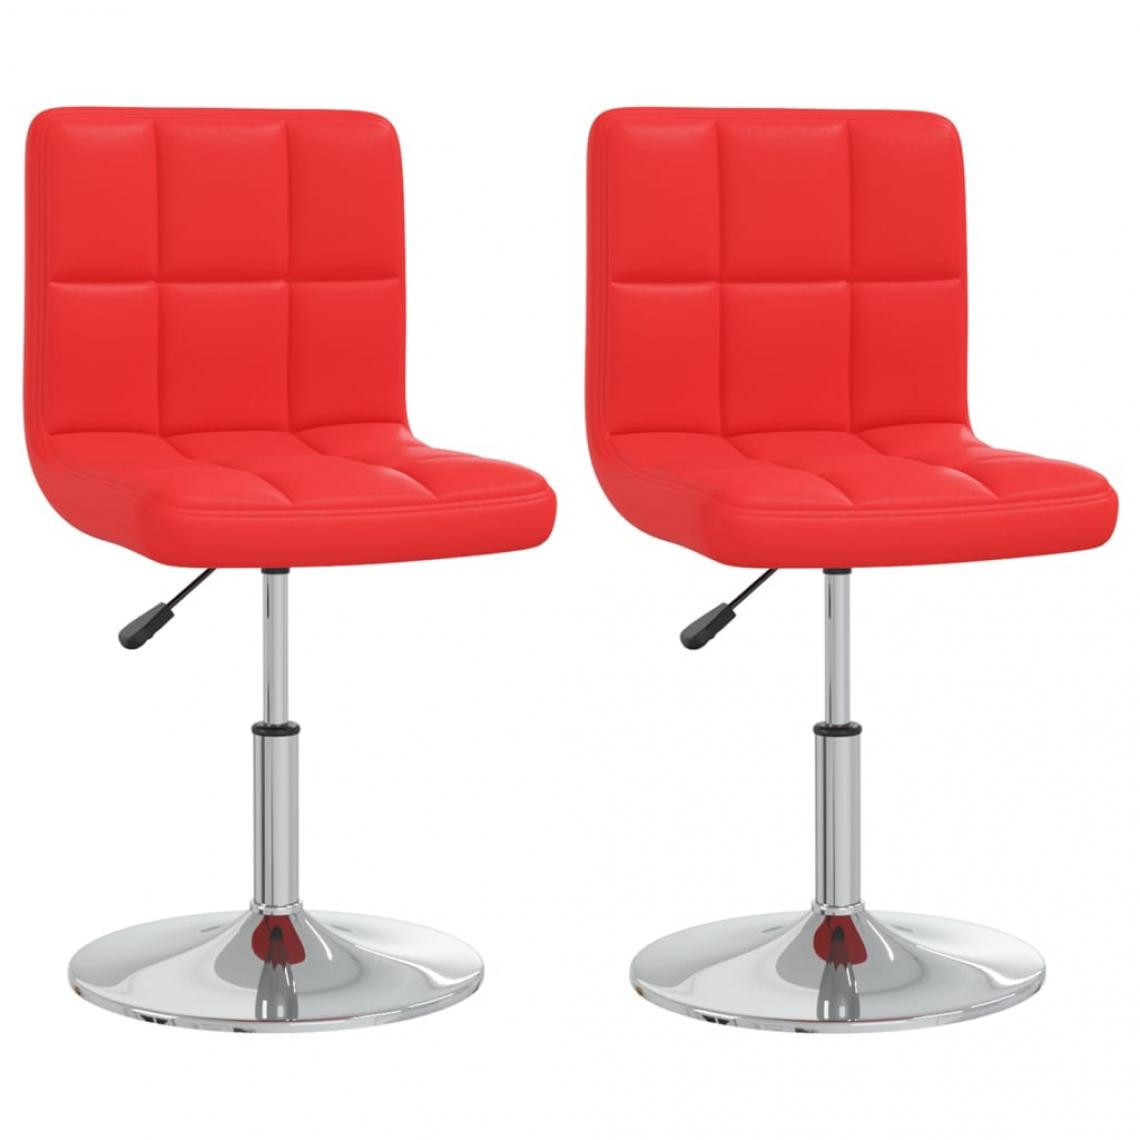 Decoshop26 - Lot de 2 chaises de salle à manger cuisine design contemporain similicuir rouge CDS021027 - Chaises